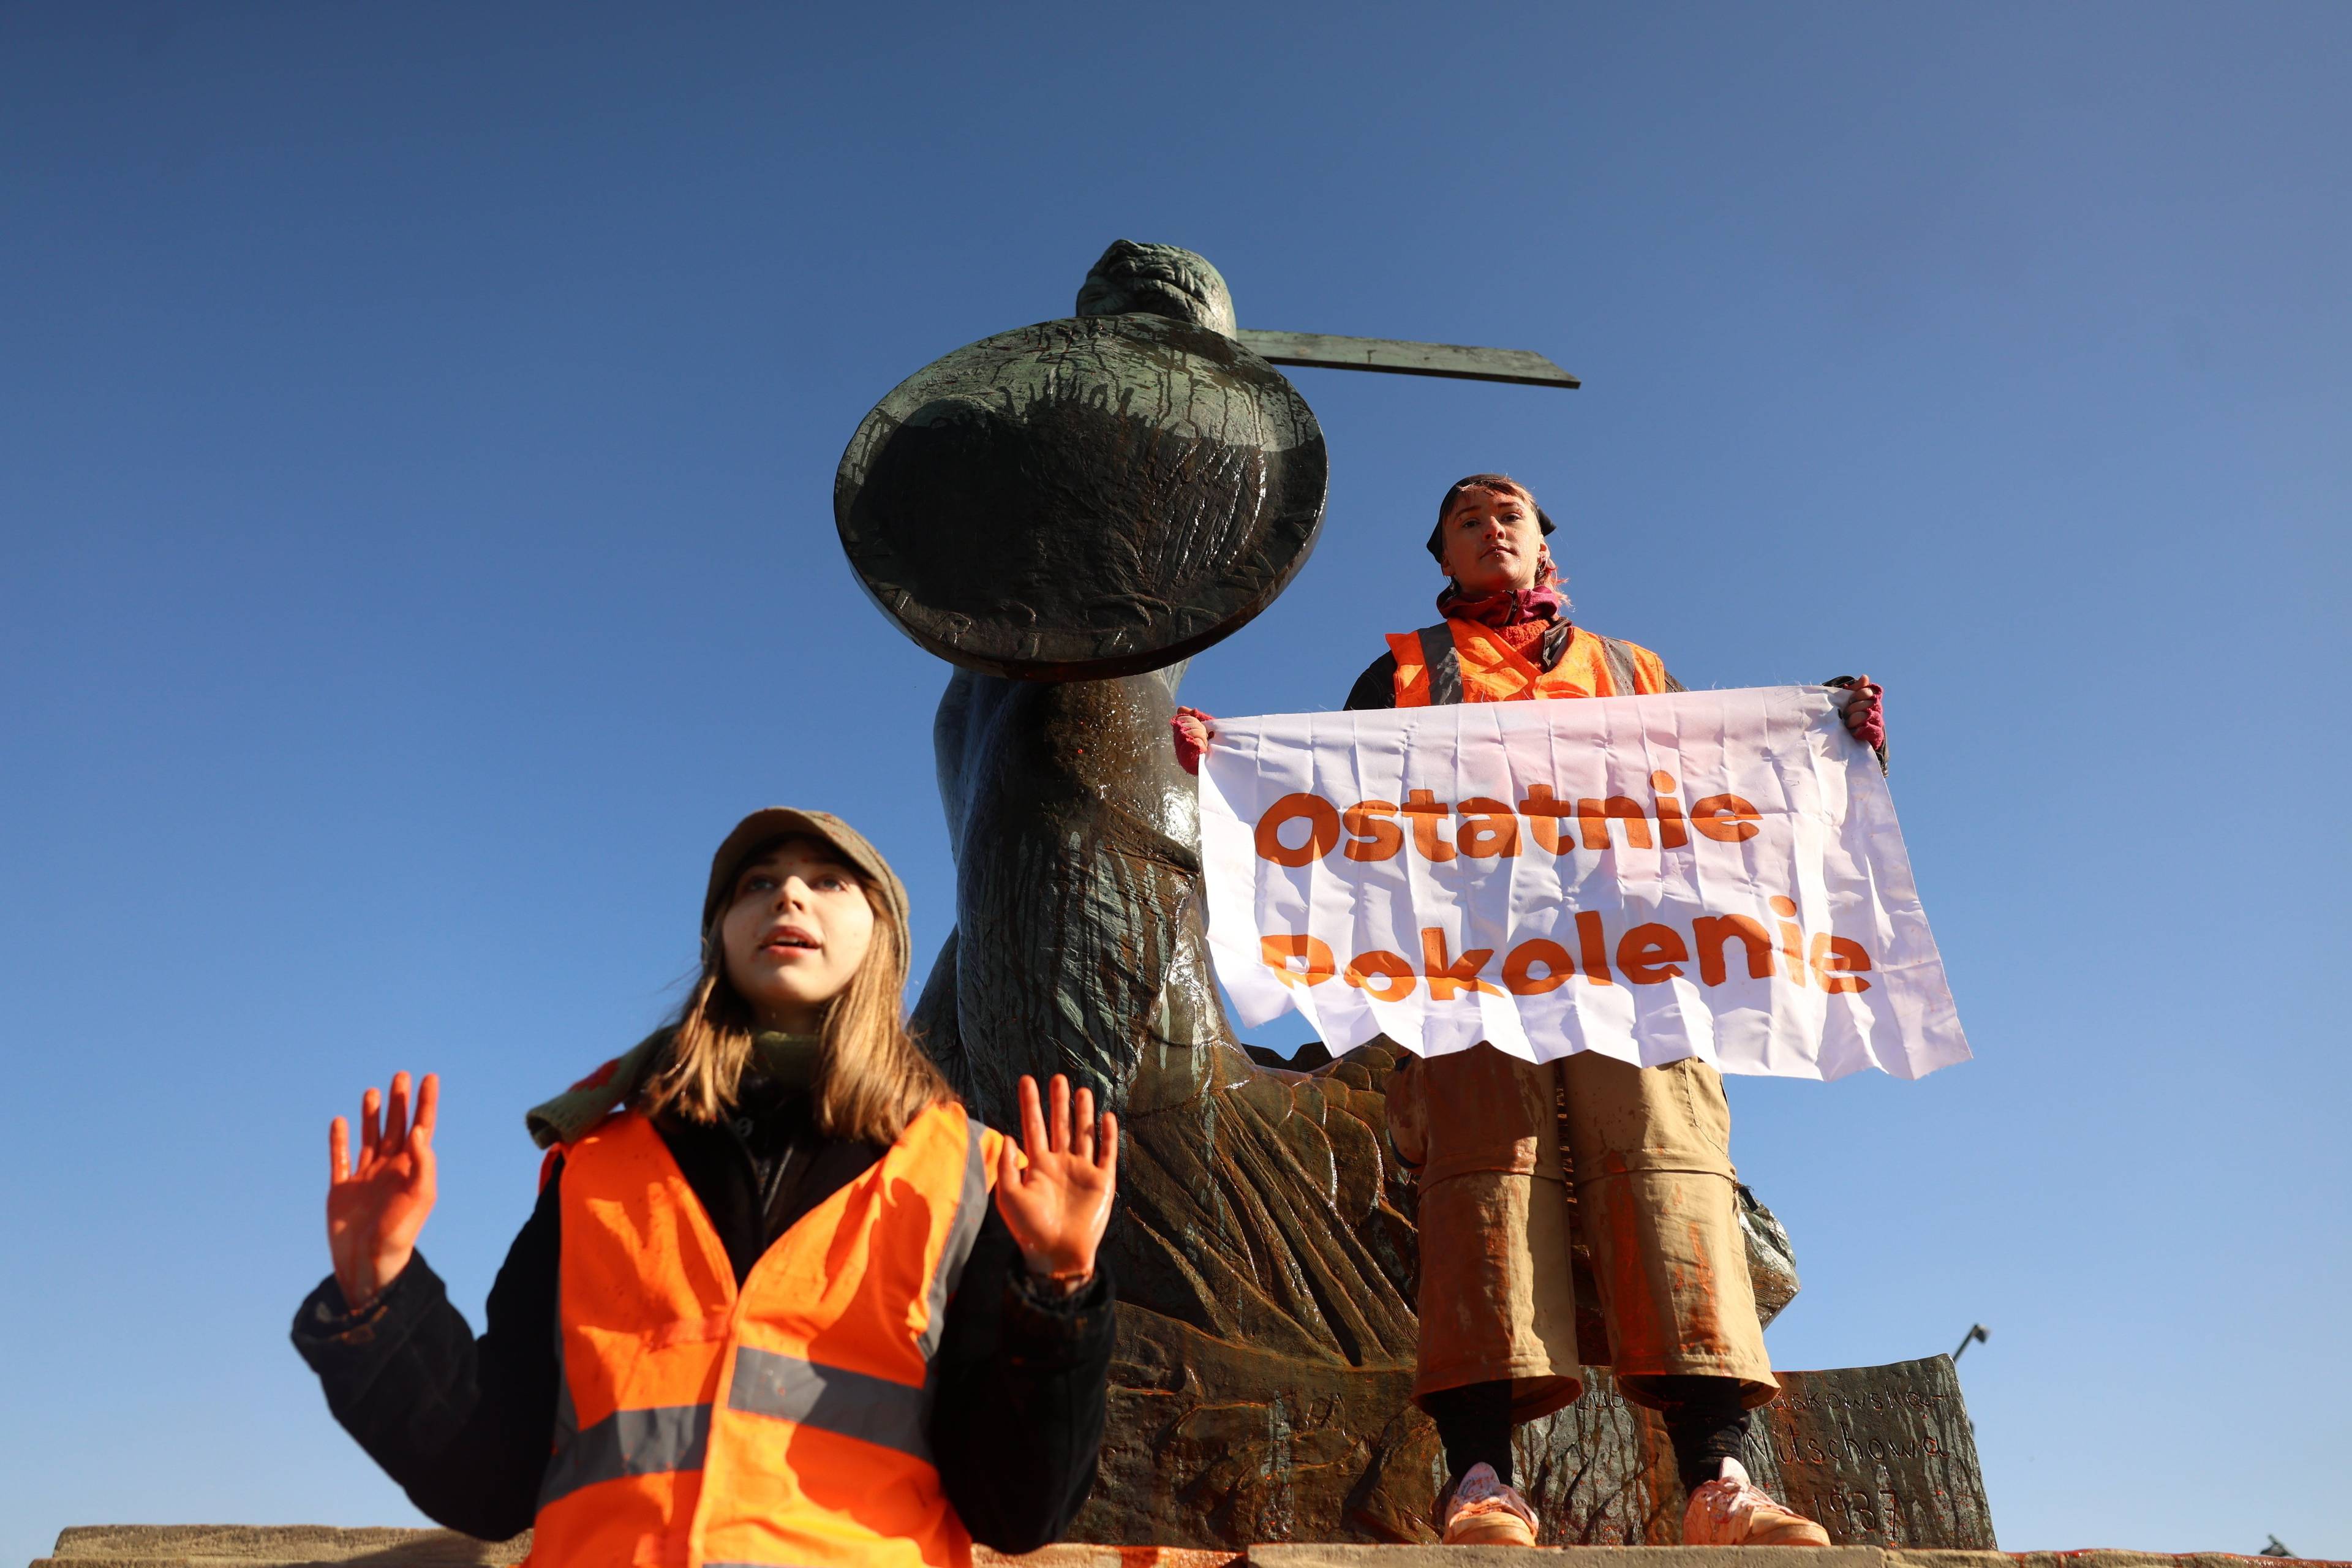 dwójka aktywistów, jedno z nich trzyma napis "ostatnie pokolenie", stoją na pomniku syrenki